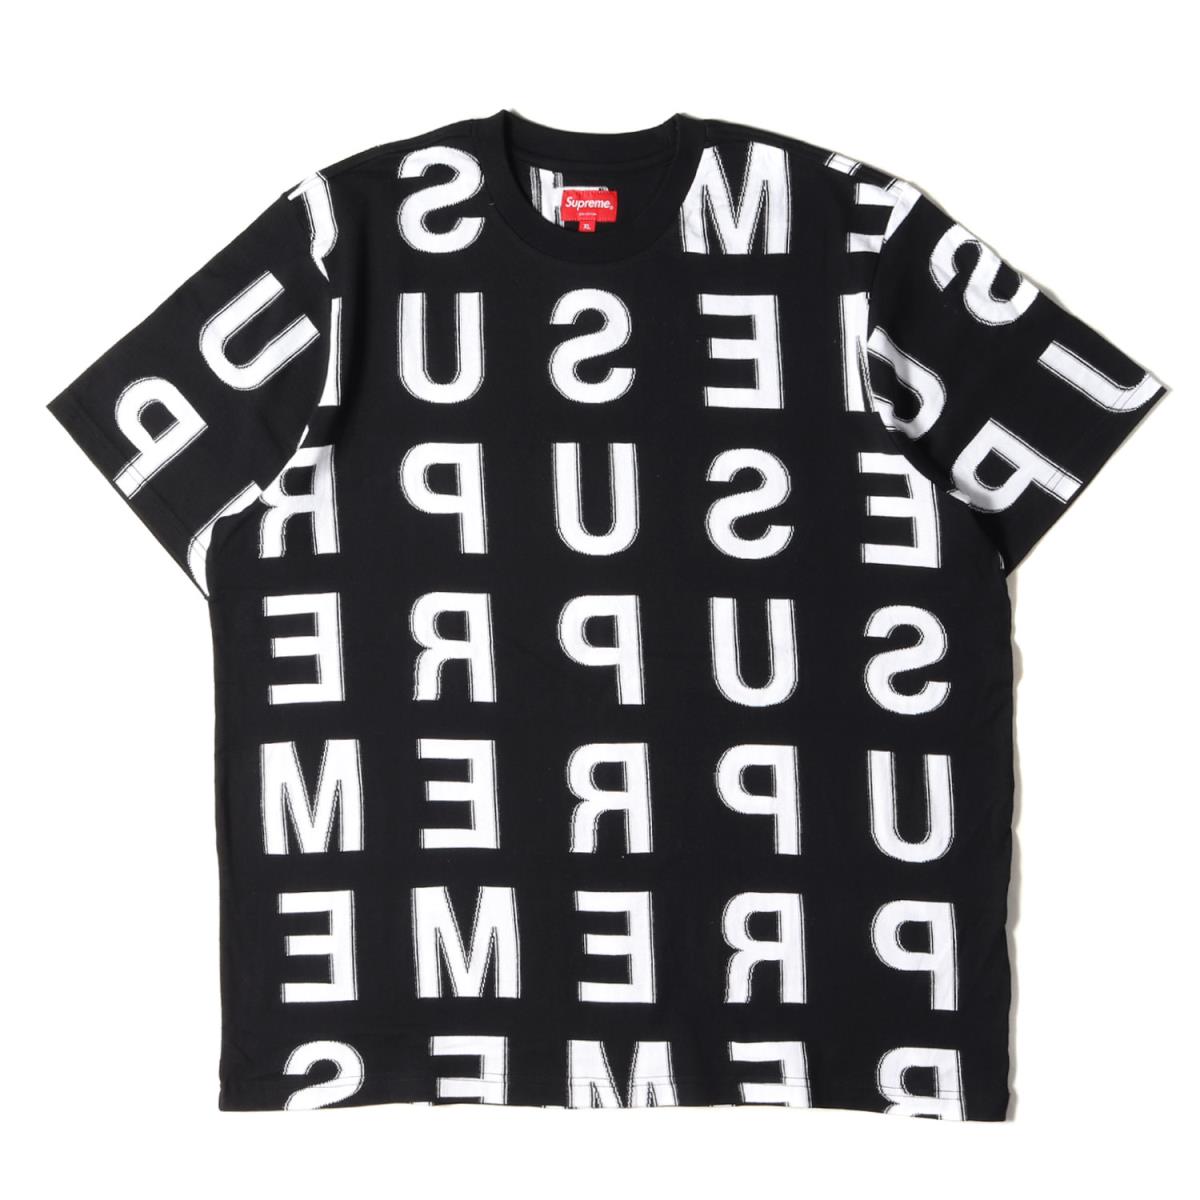 Tシャツ カットソー 高級品市場 Top S S Intarsia Tシャツ クルーネック ブランドロゴ柄 Tシャツ シュプリーム Supreme 21ss メンズ K3012 Xl ブラック Shoxruxtj Com